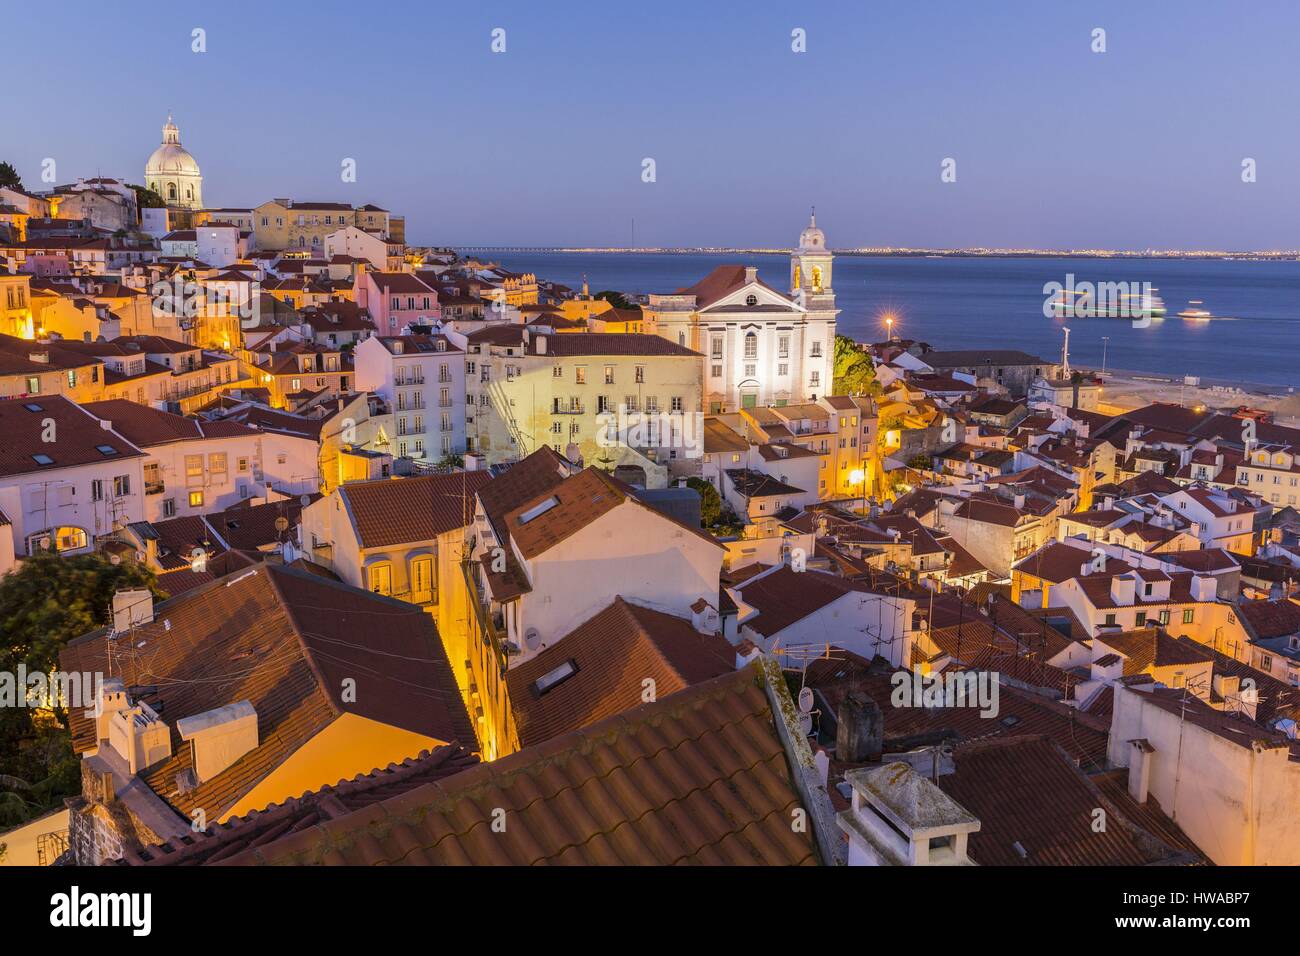 Portugal, Lisbonne, district d'Alfama, vue sur l'église Santo Estevao et du dôme du panthéon national du Portugal ancienne église de Santa Fra Banque D'Images